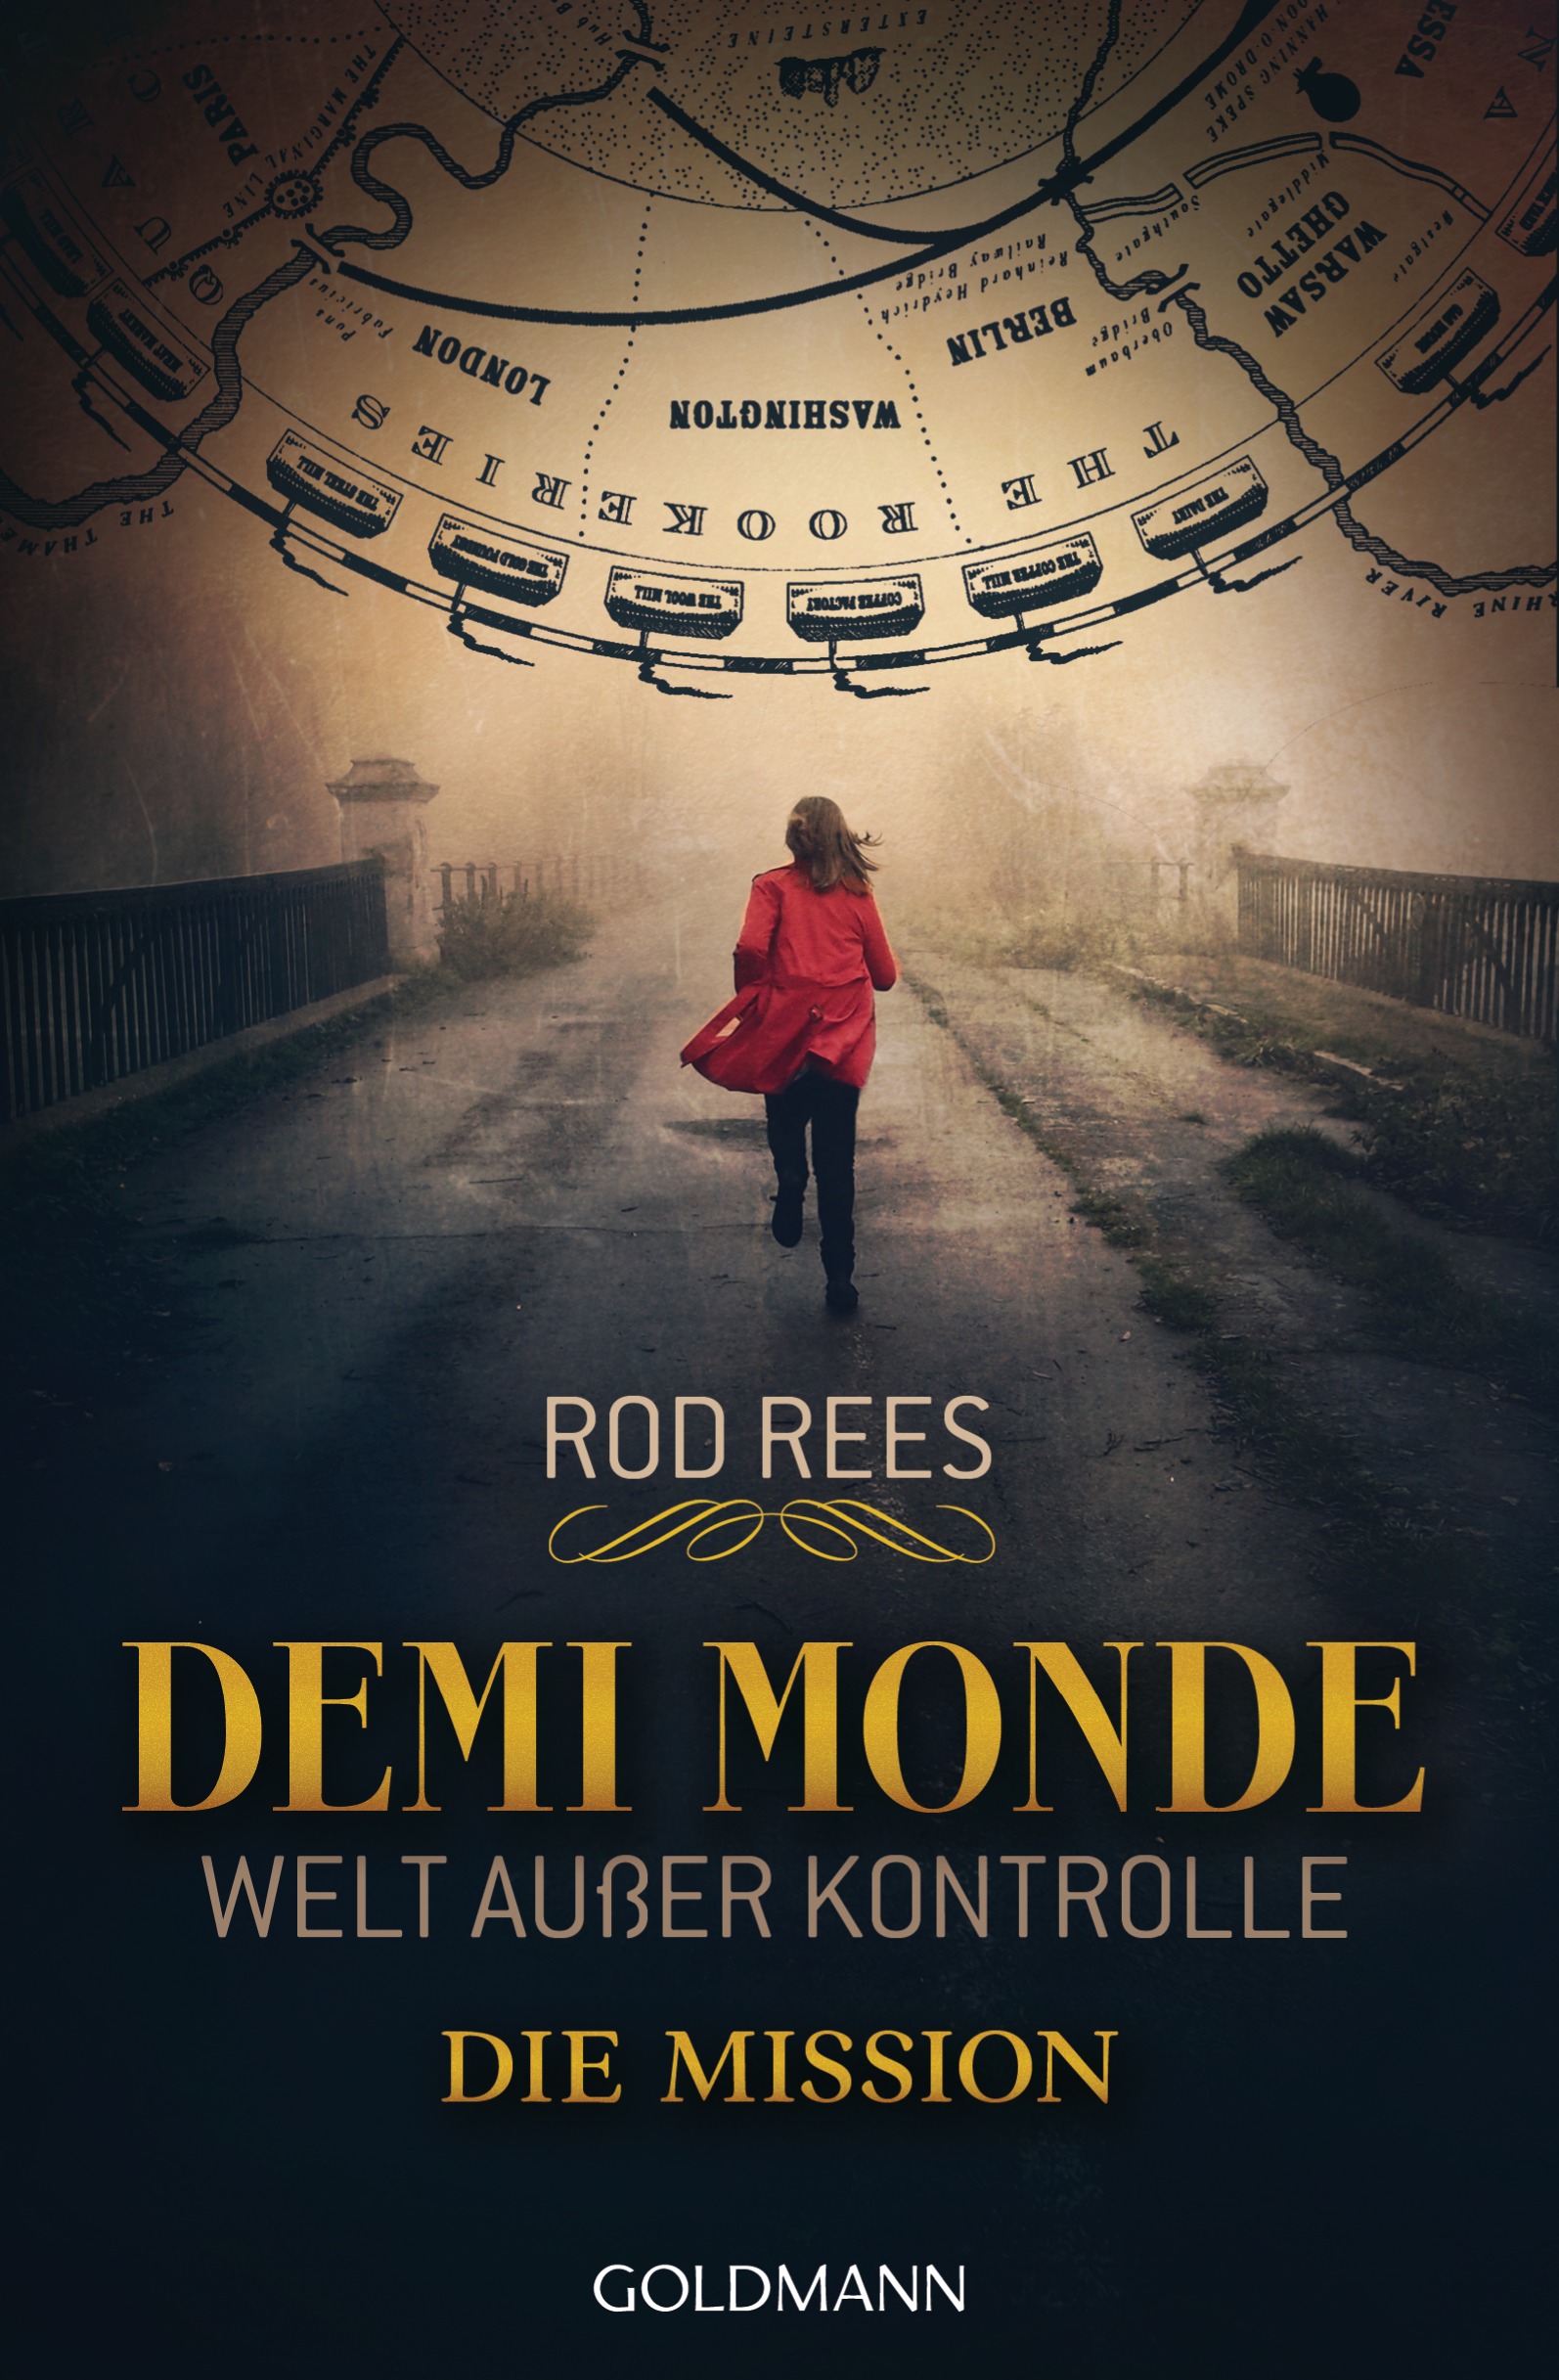 //www.randomhouse.de/content/edition/covervoila_hires/Rees_RDemi-MondeWelt_ausser_Kontrolle1_124854.jpg